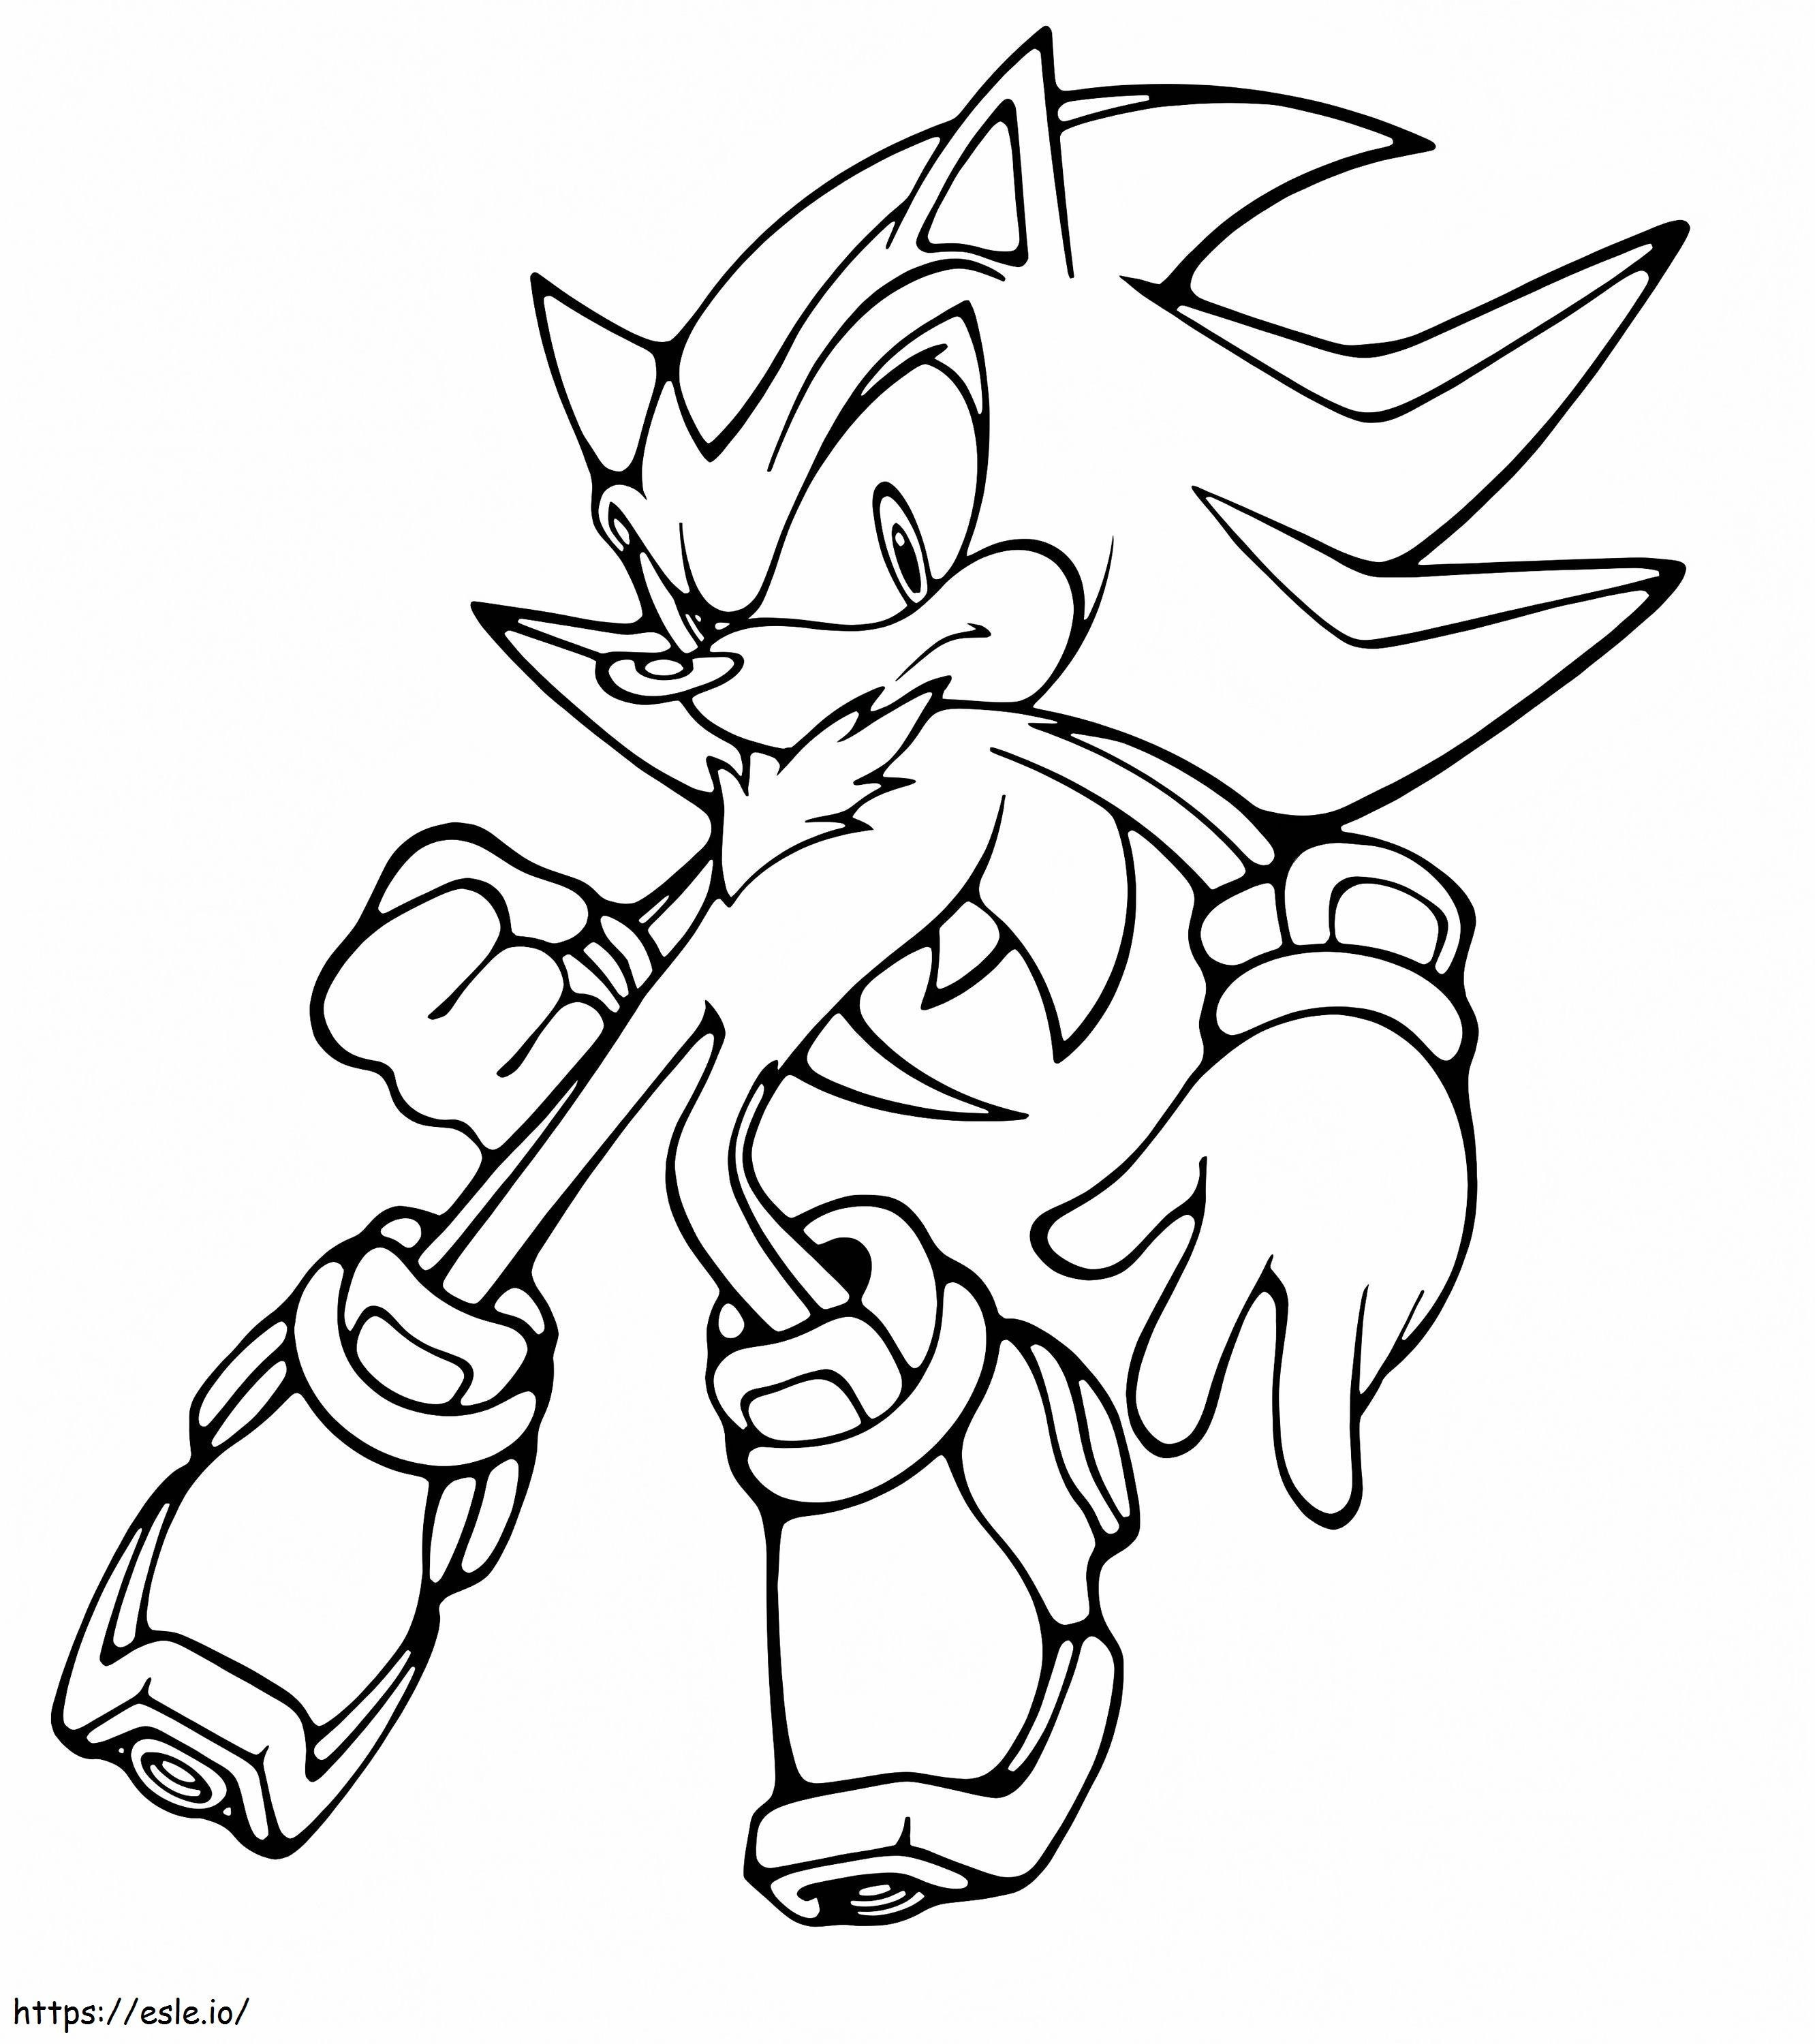 Shadow o ouriço do Sonic para colorir